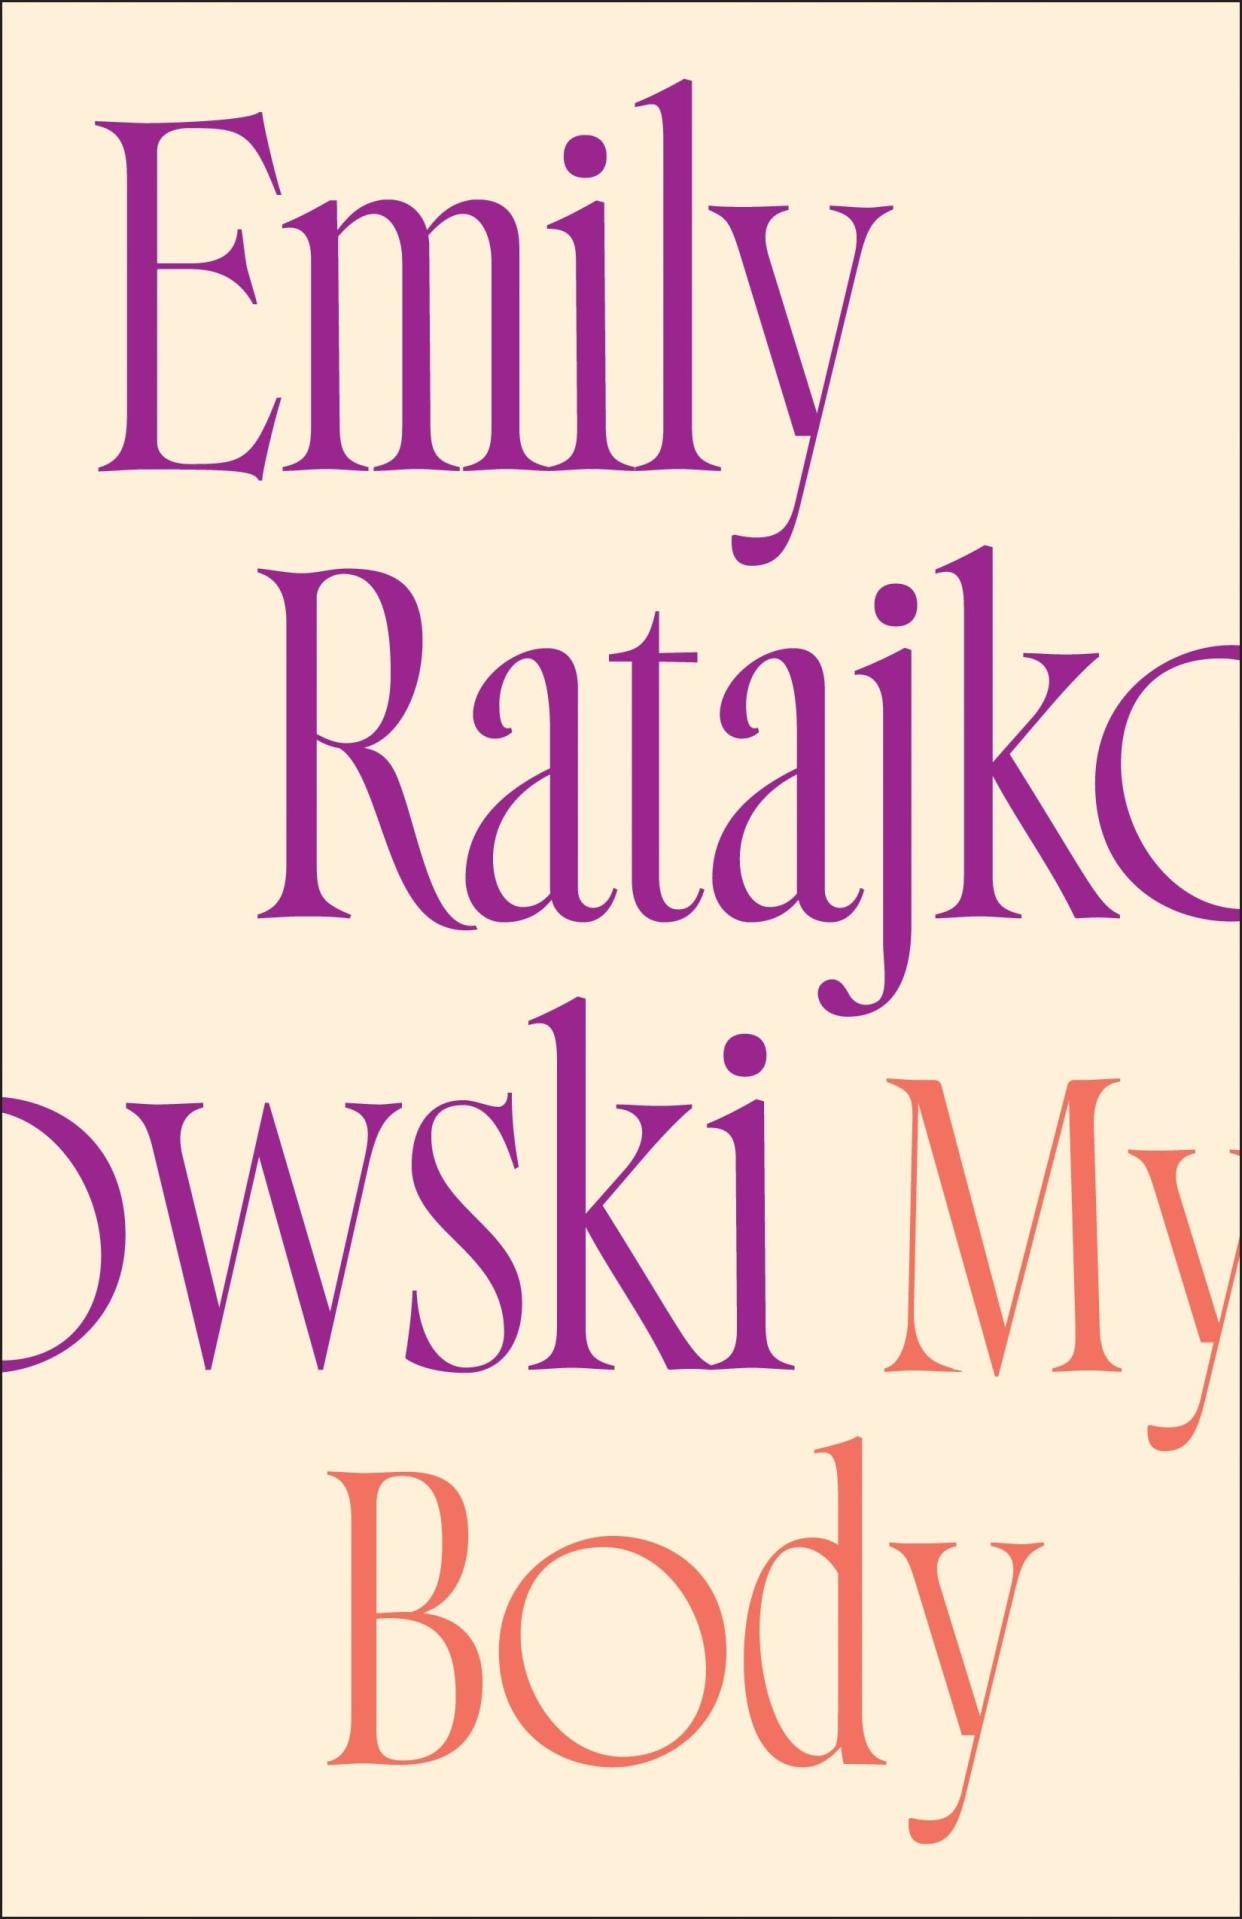 "My Body" by Emily Ratajkowski